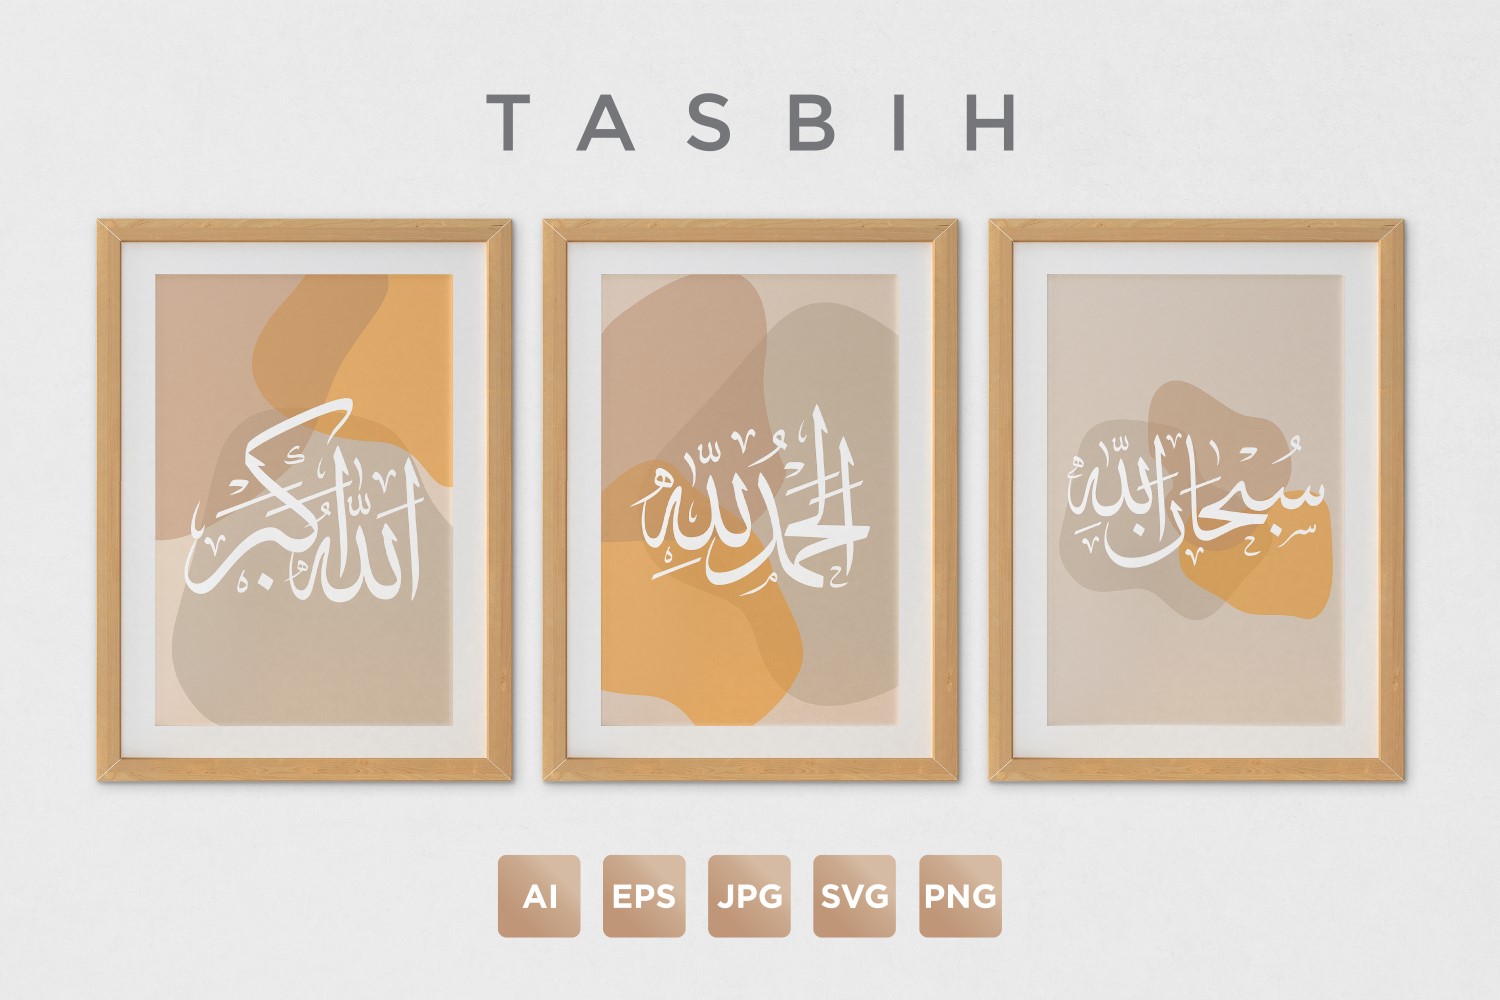 Alhamdulillah, Subhanallah, Allahu Akbar, Tasbih, Calligraphy Design